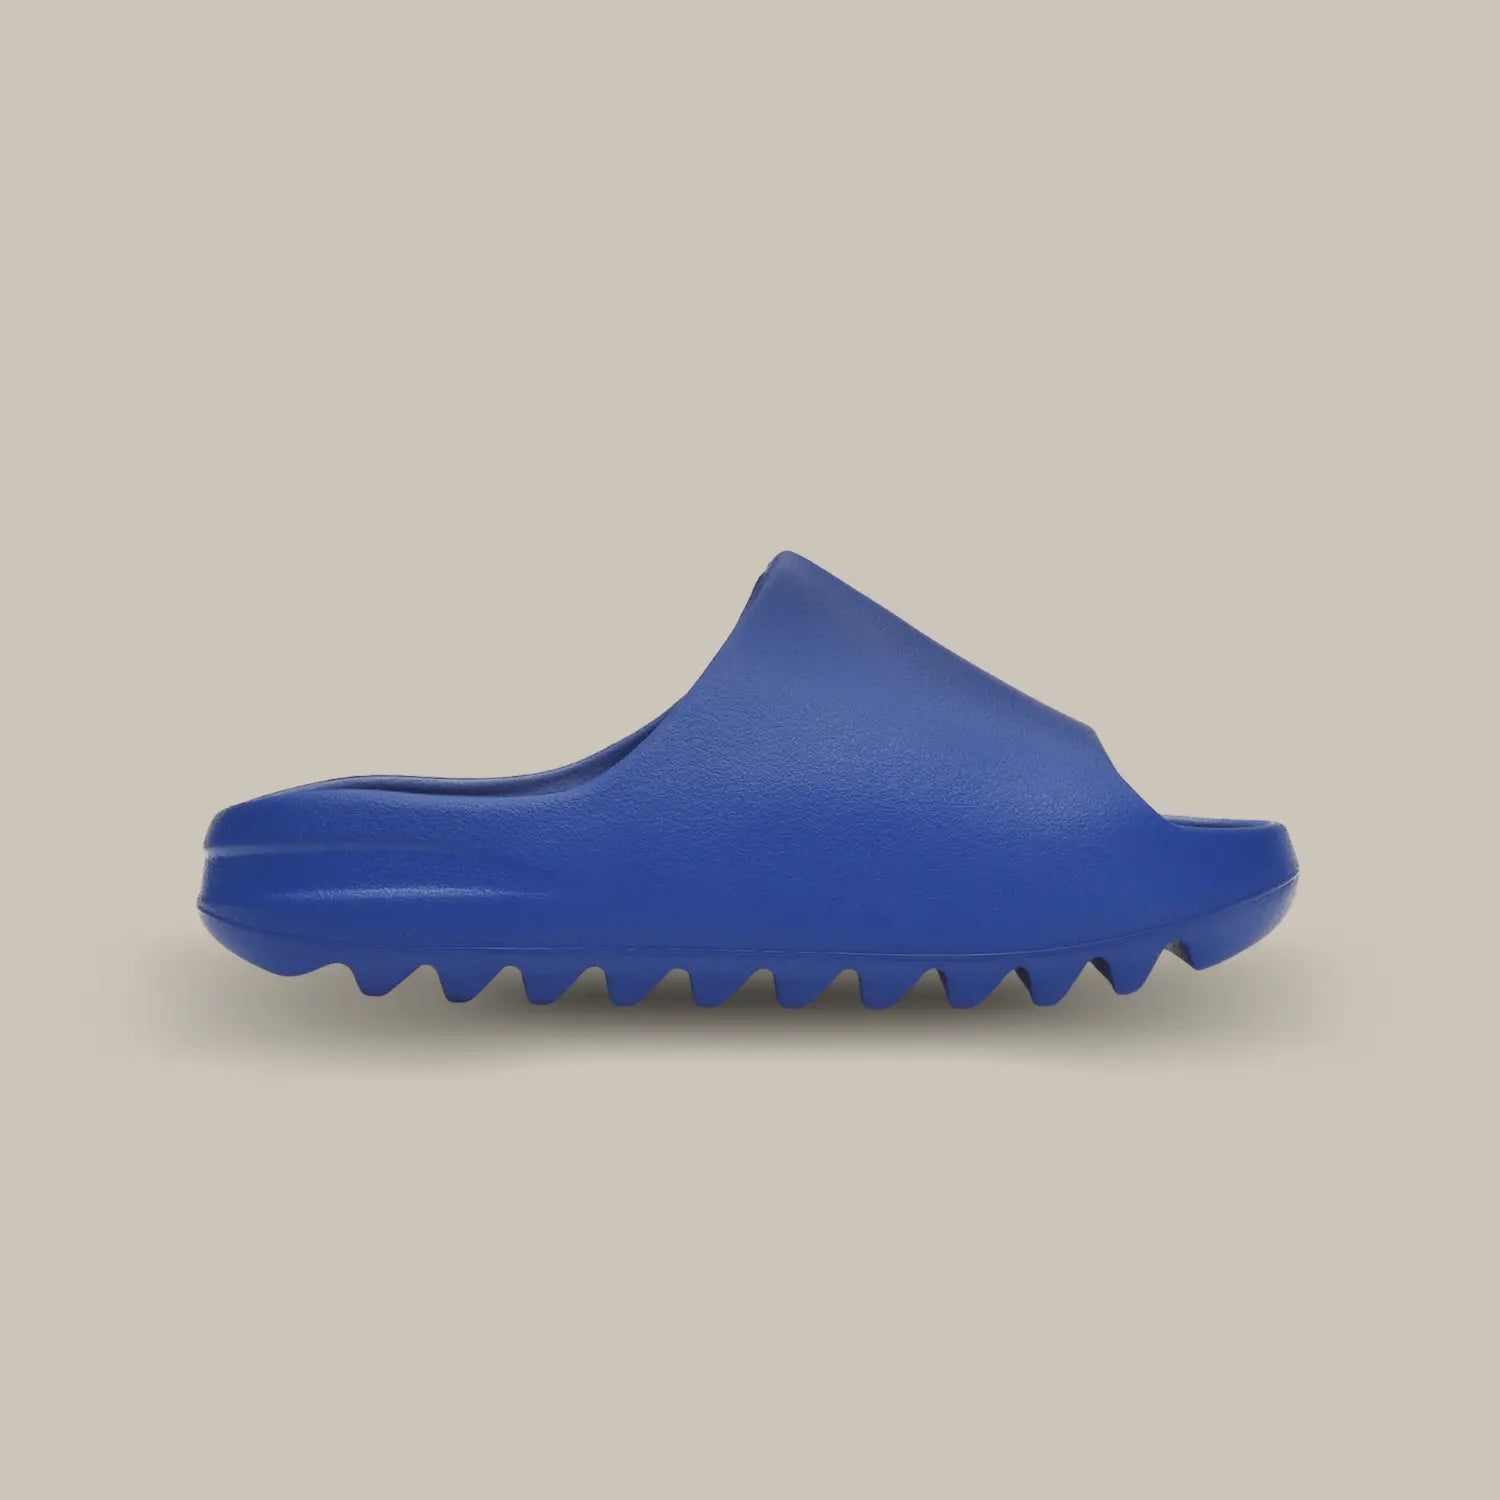 La Yeezy Slide Azure de coté, cette claquette avec son coloris monochrome bleu roi et sa structure en mousse EVA.